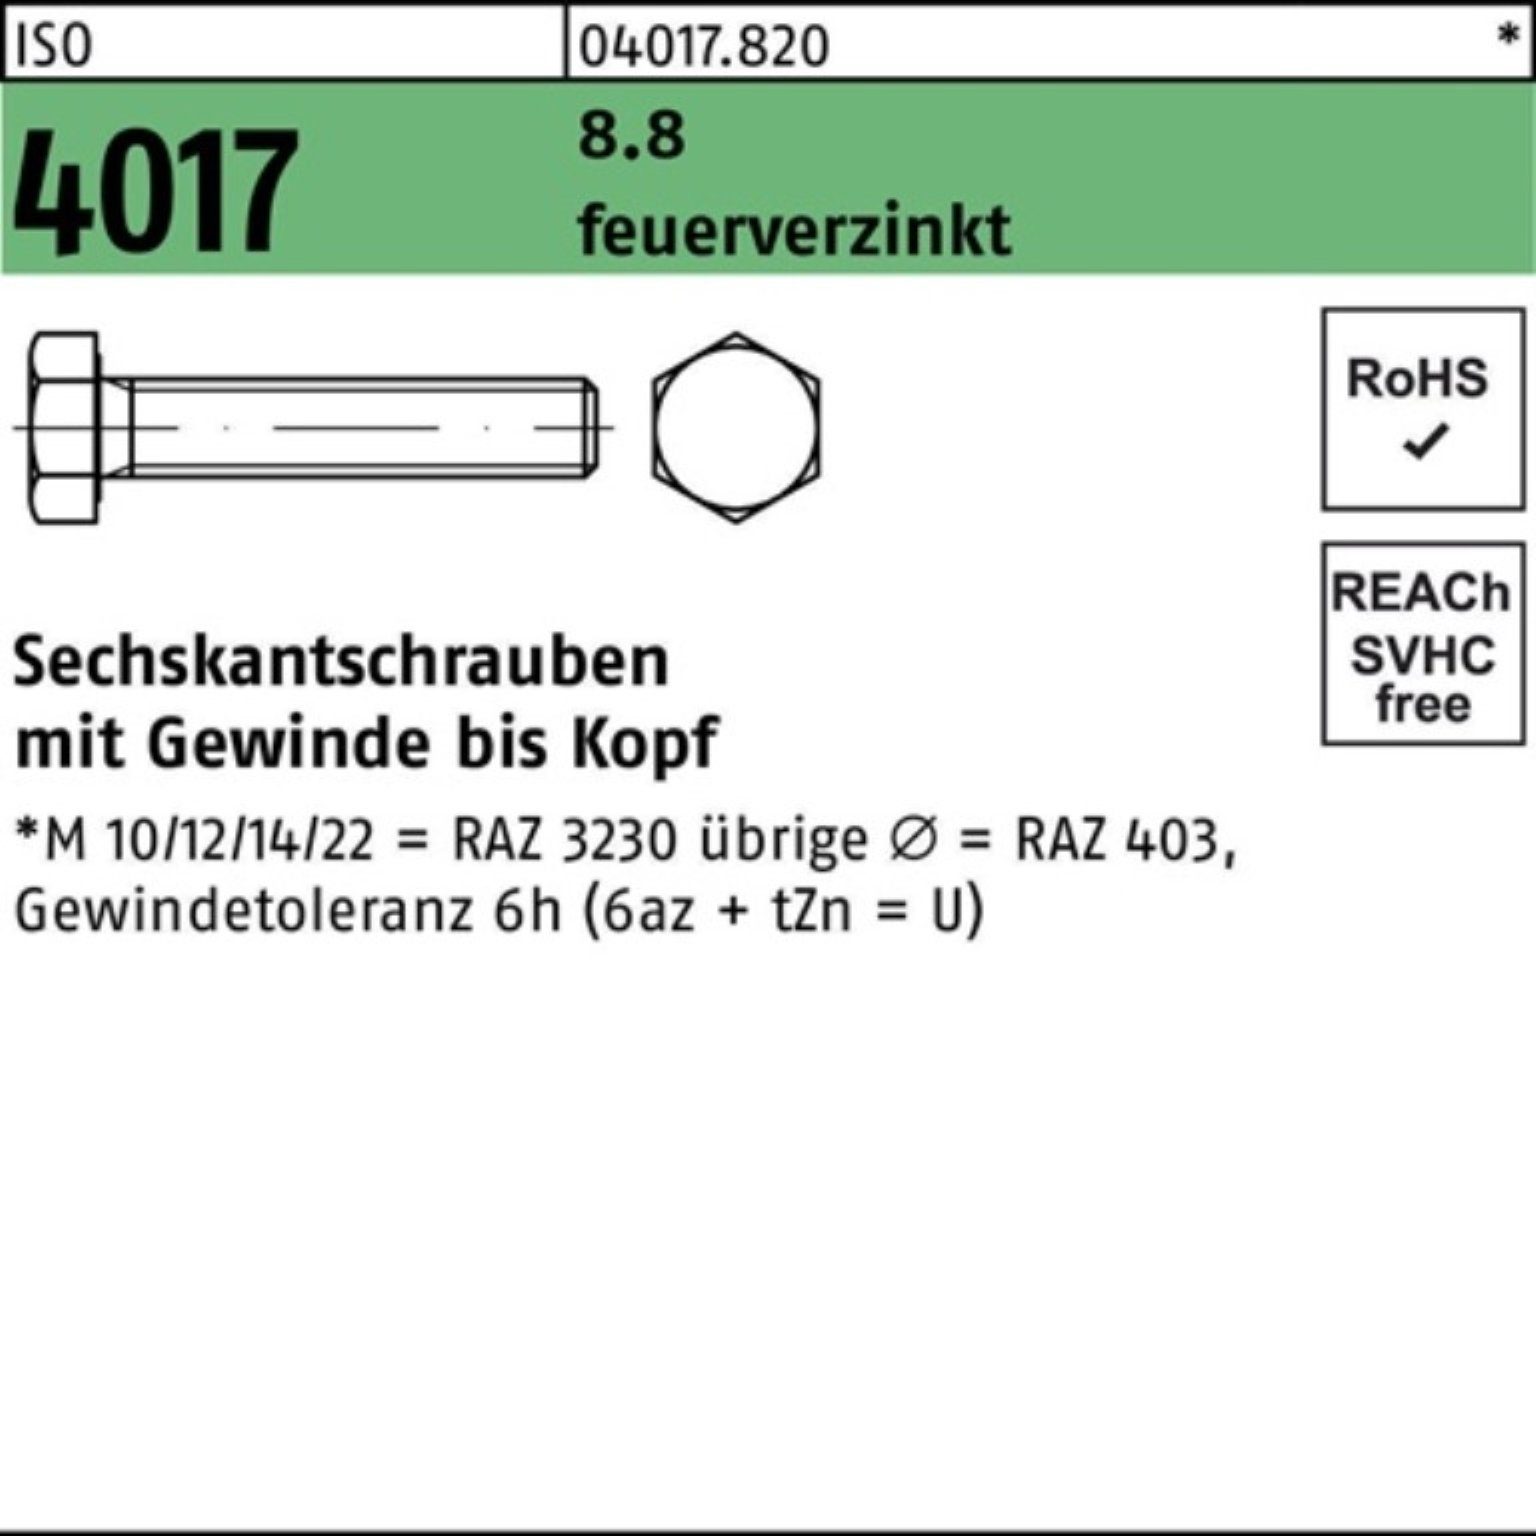 Bufab Sechskantschraube 100er Pack Sechskantschraube ISO 4017 VG M10x 60 8.8 feuerverz. 100 St